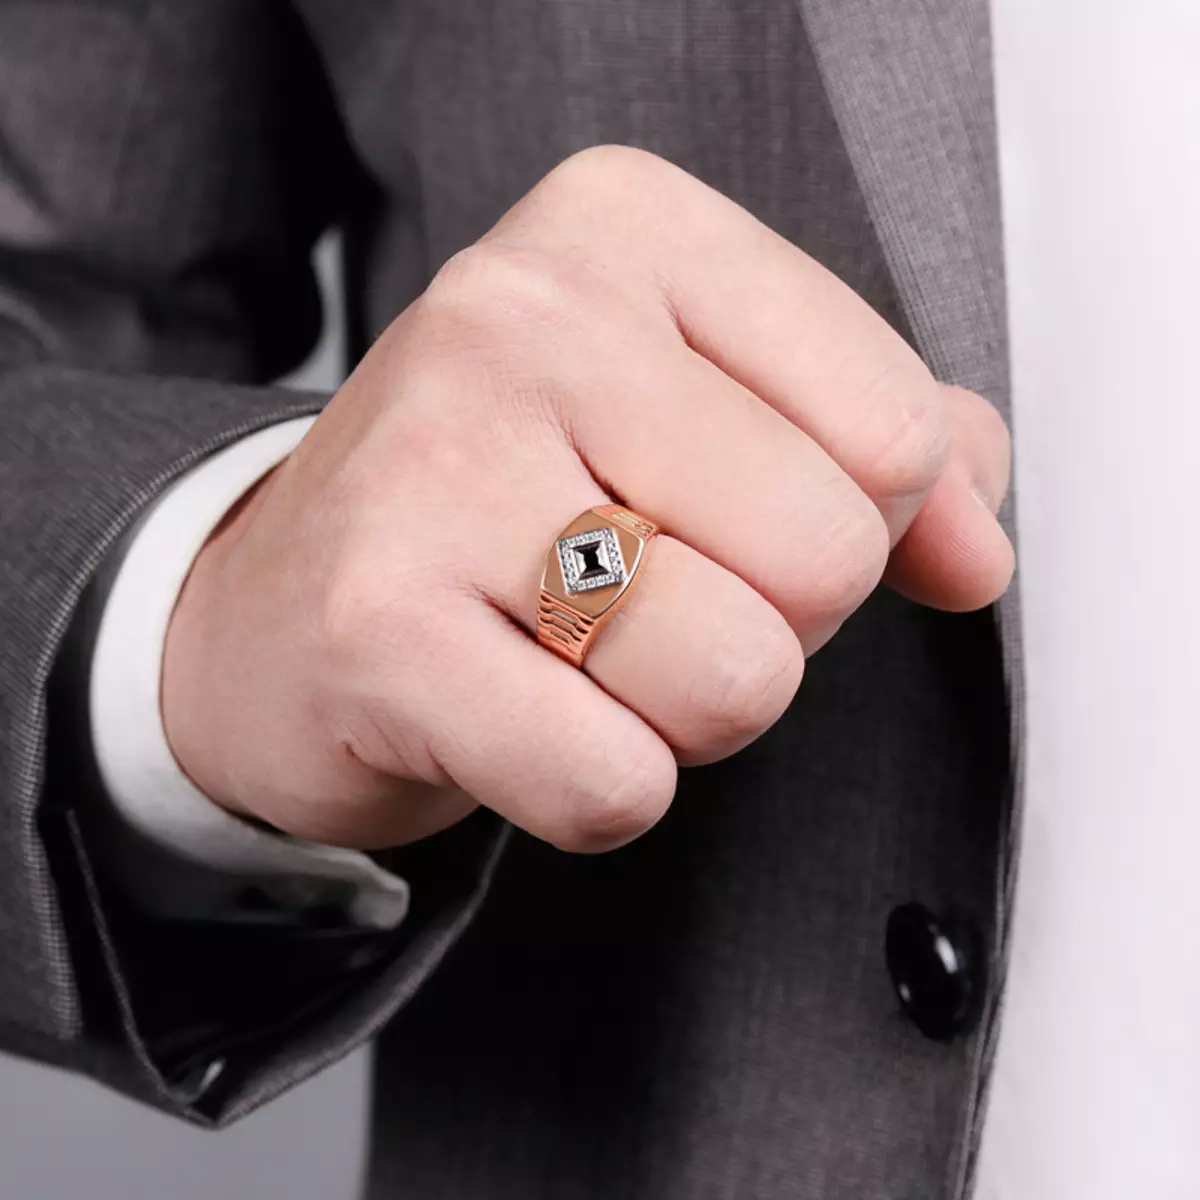 Печатка на палец мужская. Мужское кольцо. Перстень мужской. Стильные мужские кольца. Перстень на руке.